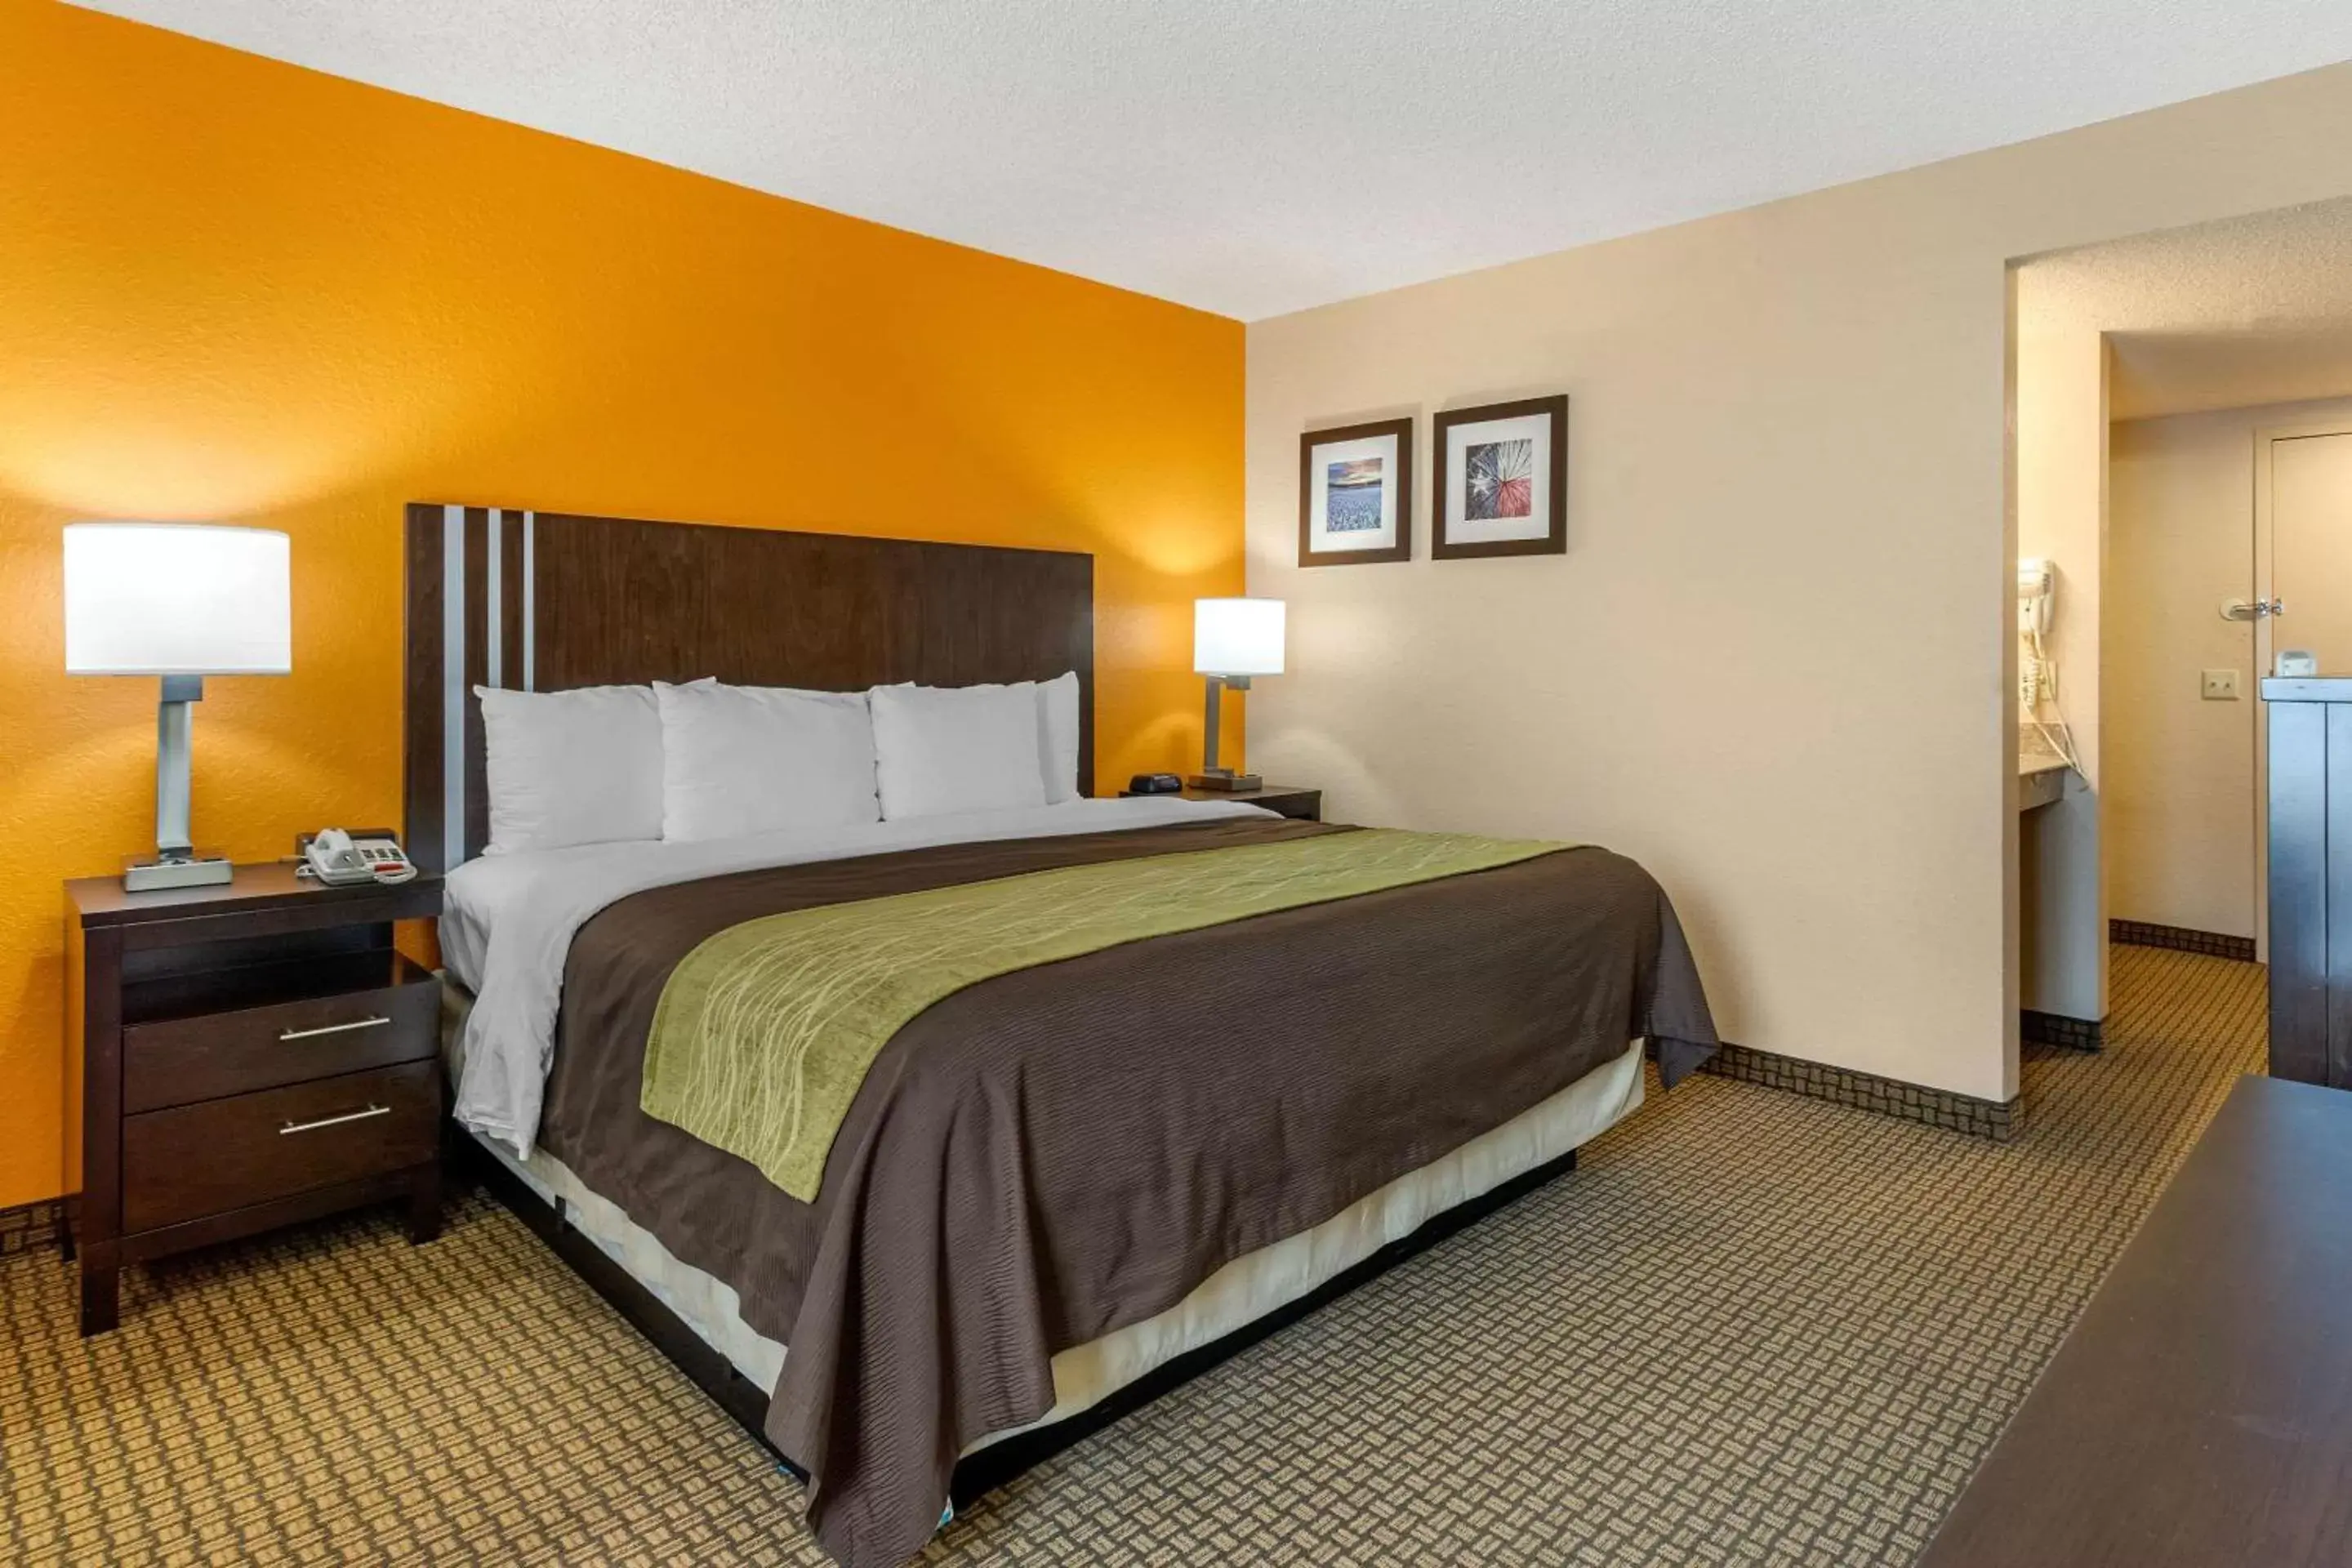 Bedroom, Bed in Comfort Inn 290/NW